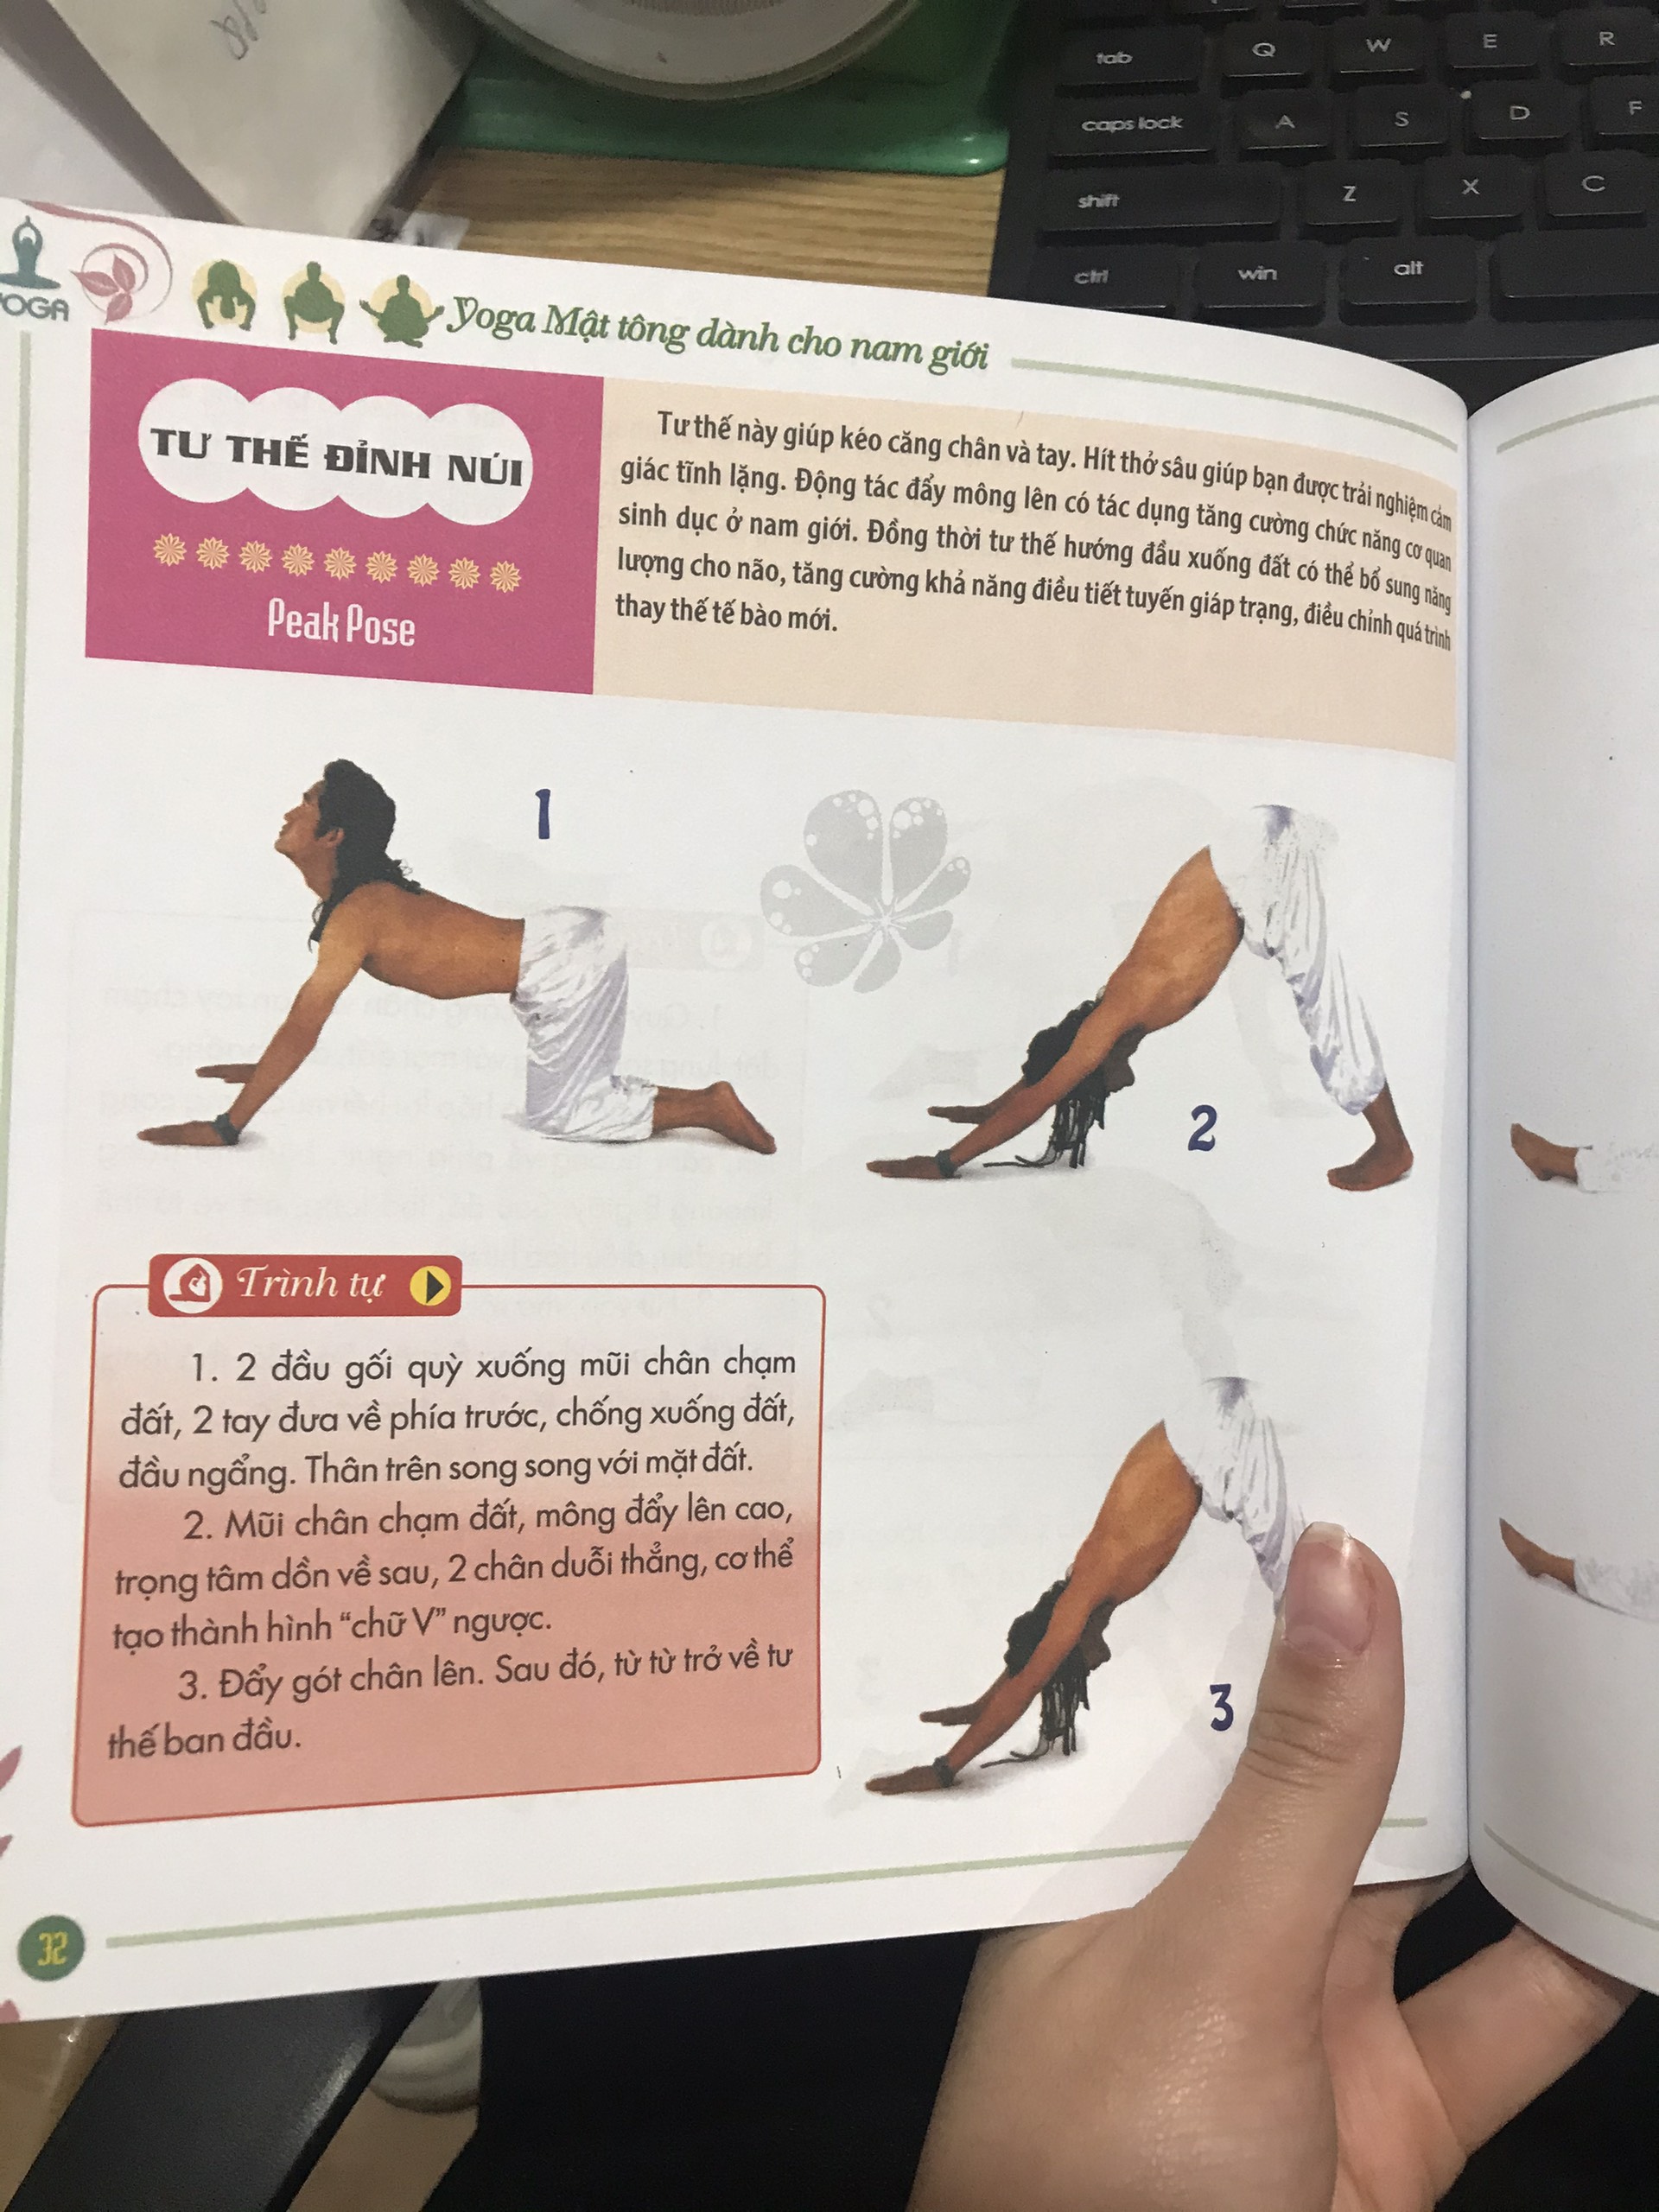 Yoga mật tông dành cho nam giới , kèm đĩa CD ( Minh Lâm )